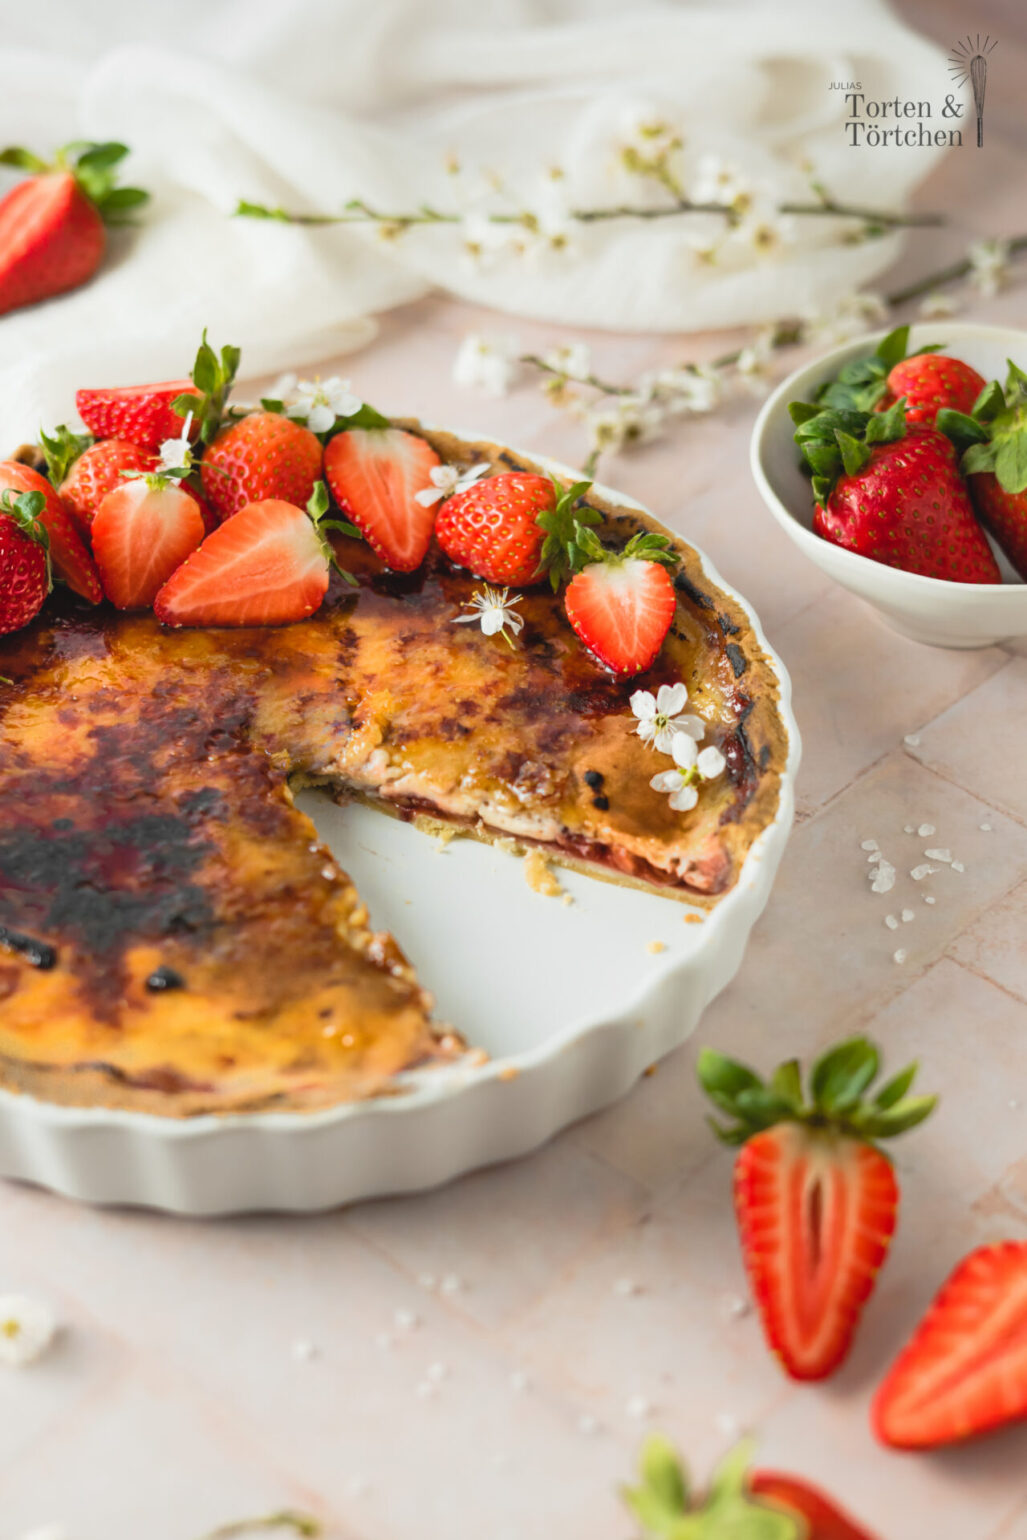 Saisonales Rezept für eine Feine Creme Brulee Tarte mit frischen Erdbeeren und Erdbeerfüllung. Dazu zart knuspriger Mürbeteig und eine knackige Schicht karamellisierter Zucker. #brulee #tarte #erdbeer #erdbeeren #erdbeertorte #erdbeertarte #erdbeerkuchen #dessert #saisonal